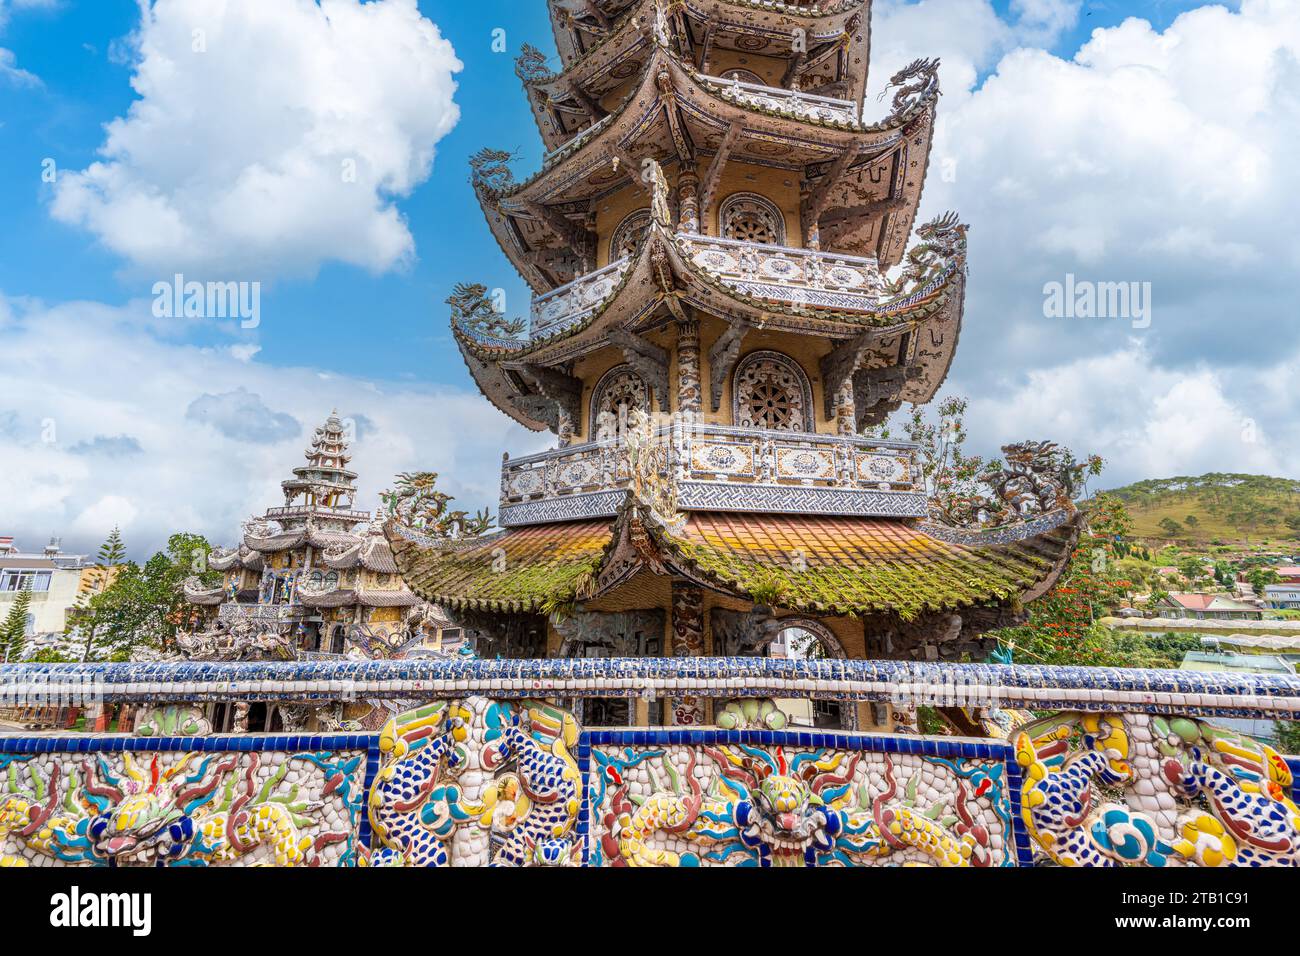 Die Linh Phuoc Pagoda oder VE Chai Pagoda ist ein buddhistischer Drachentempel in Dalat in Vietnam. Da Lat ist ein beliebtes Touristenziel Asiens. Stockfoto